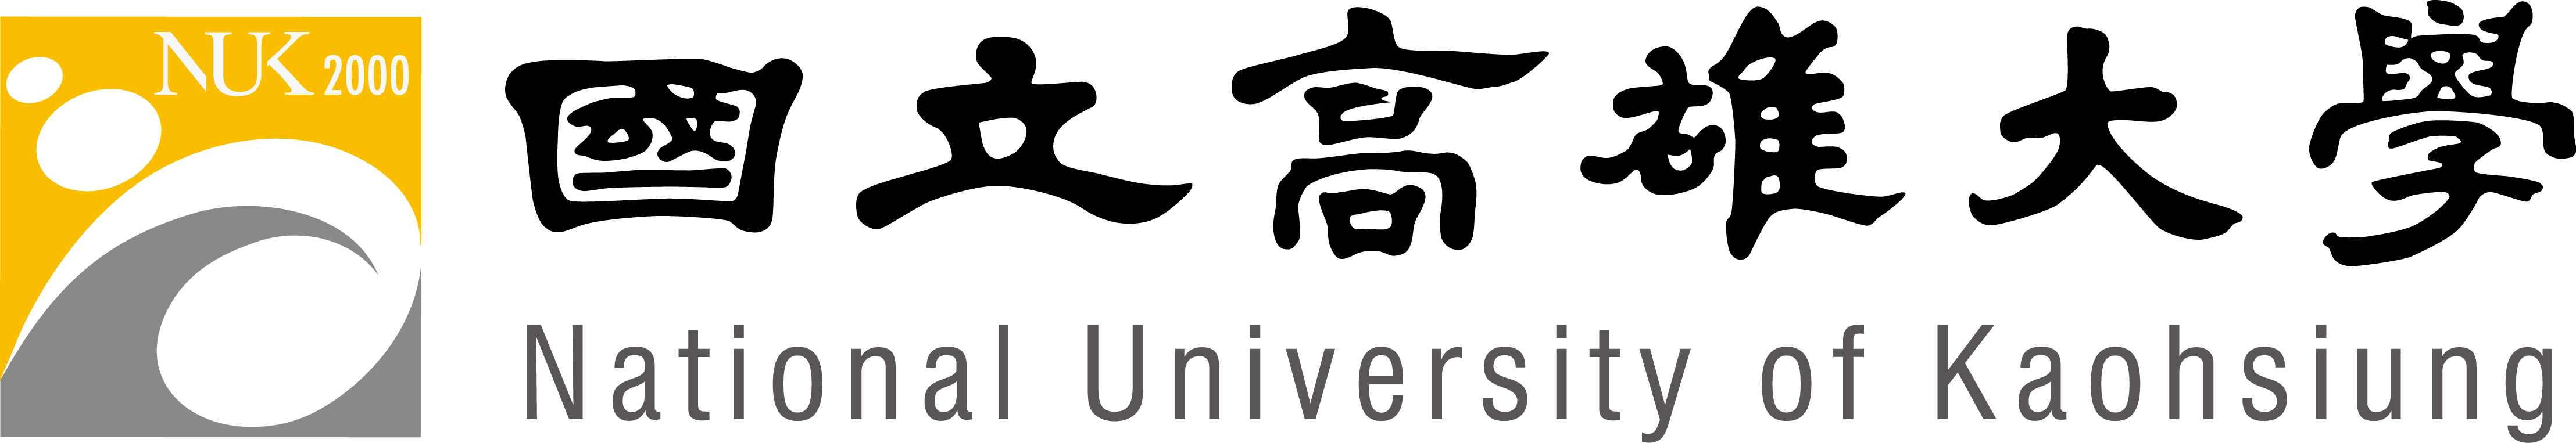 方形logo+中文標準字+英文標準字